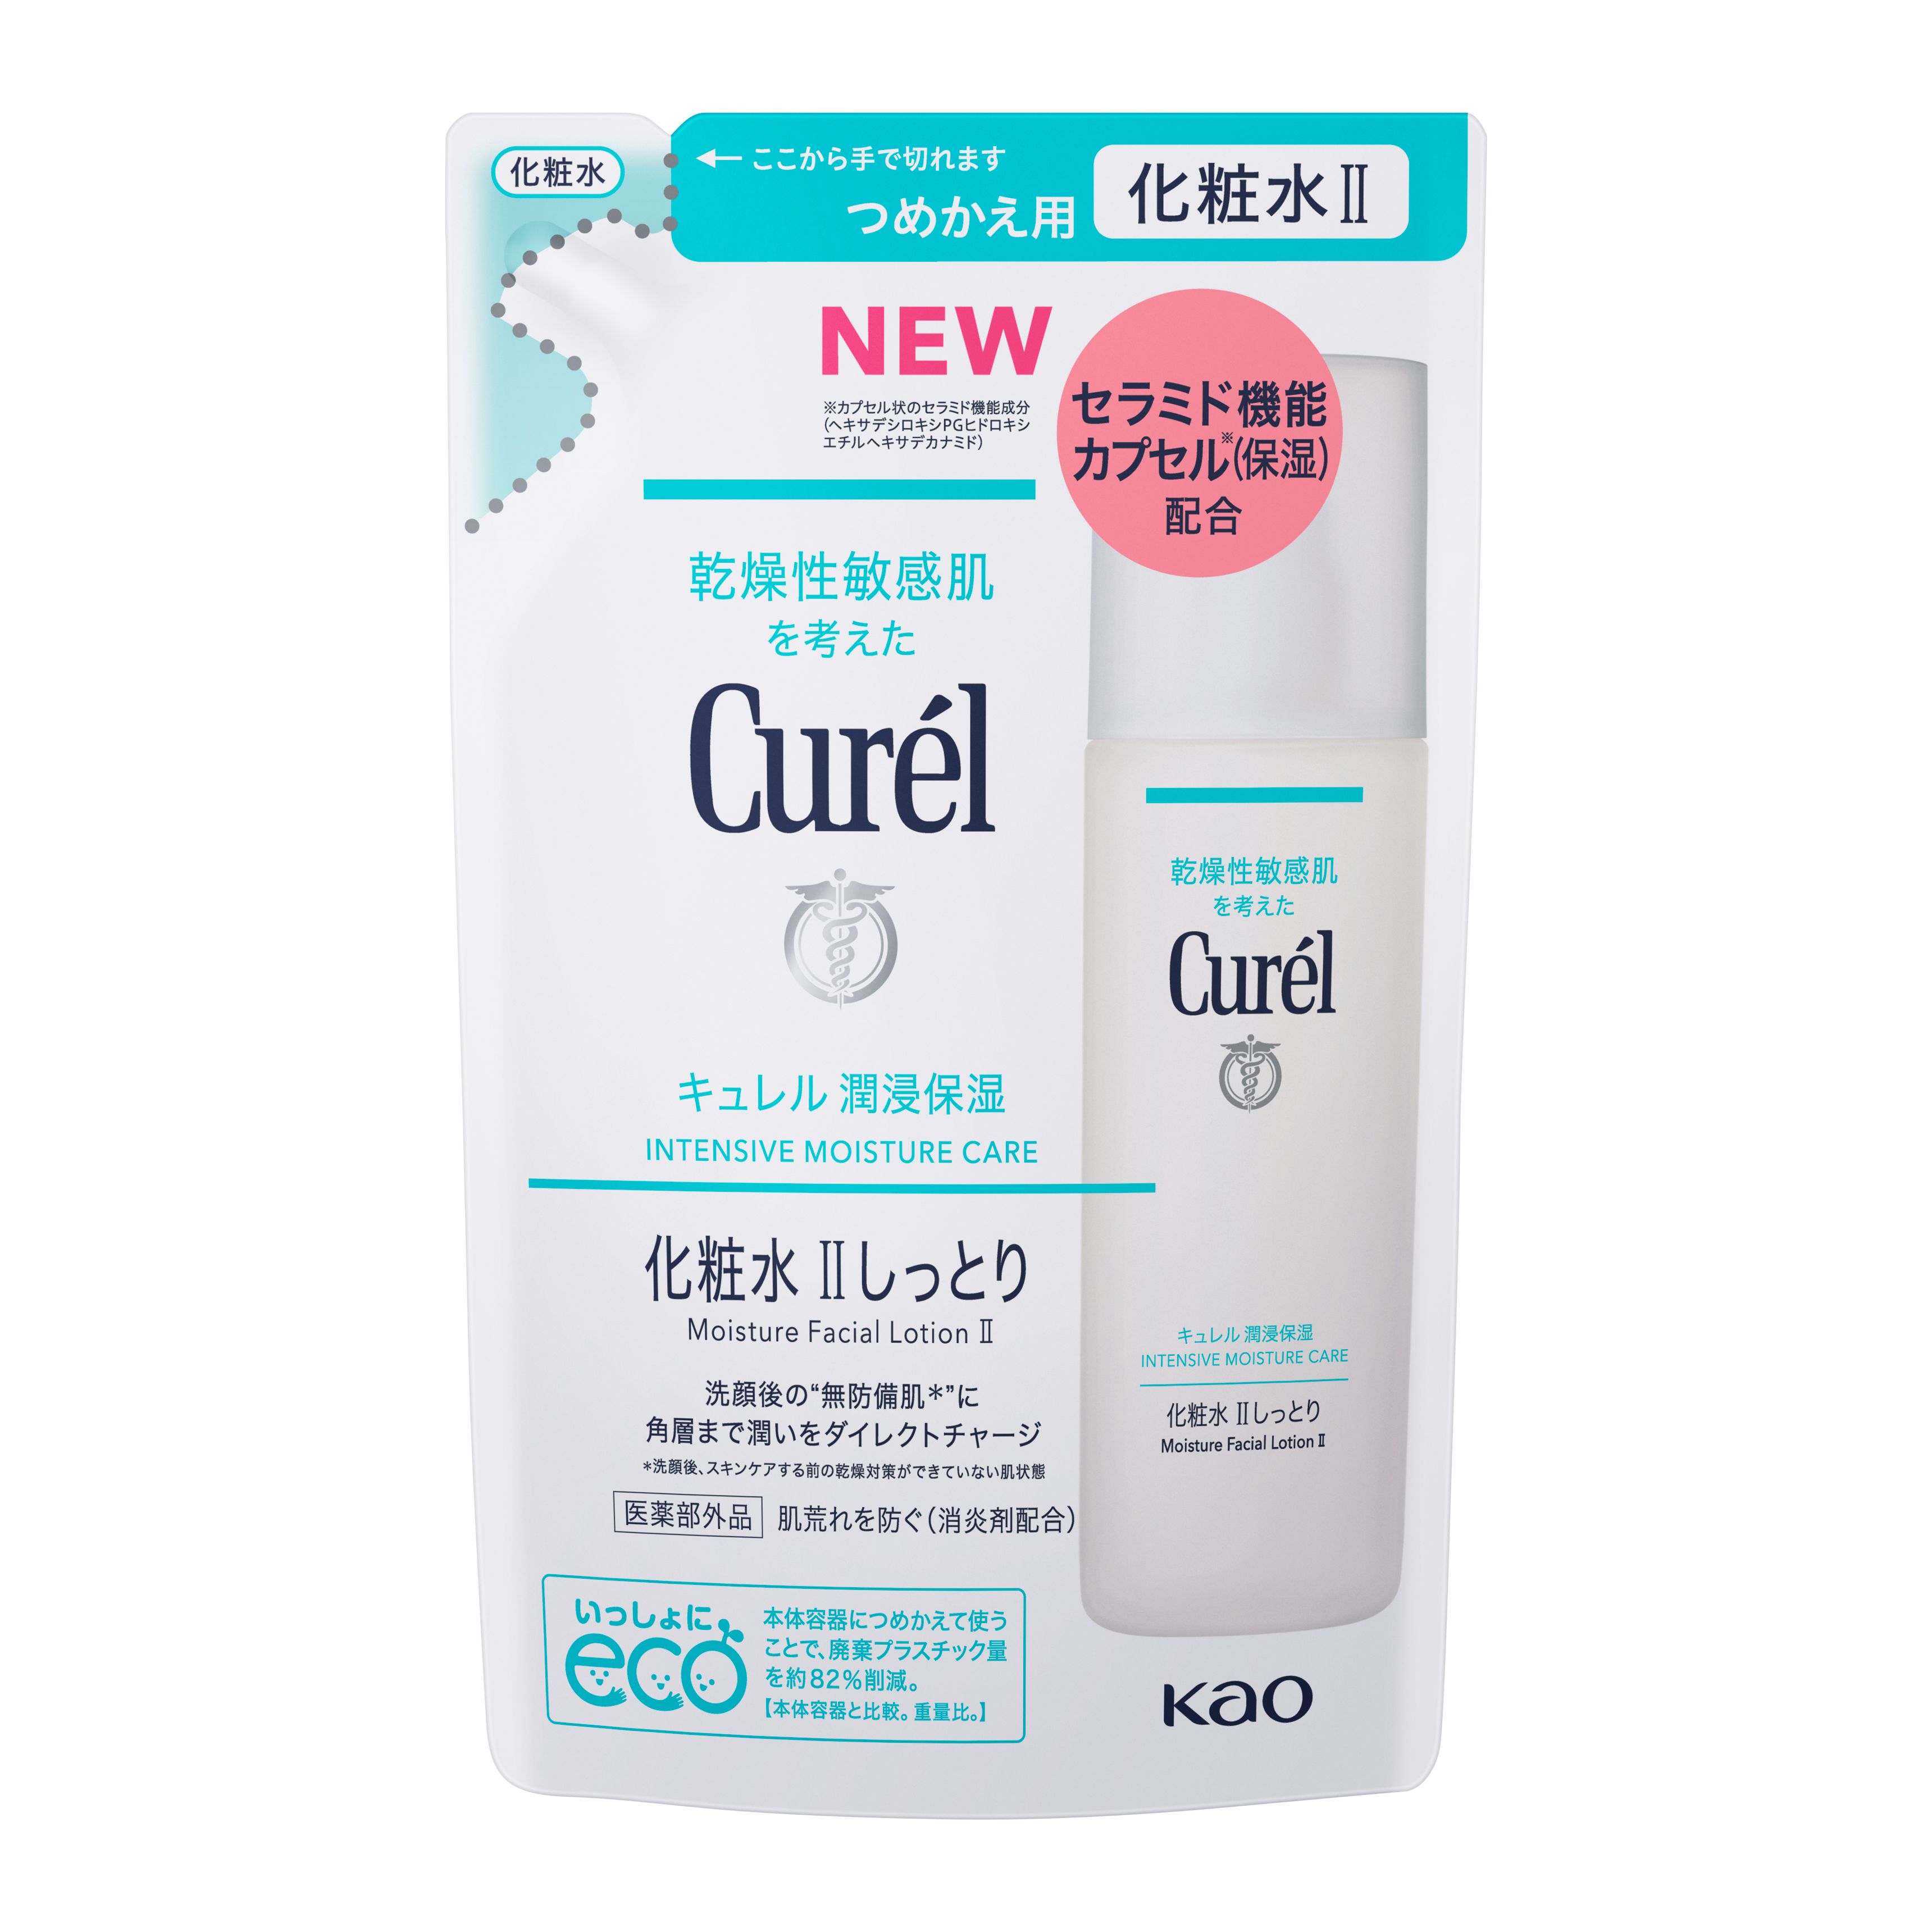 【キュレル】Curel 化粧水Ⅱ+乳液セット